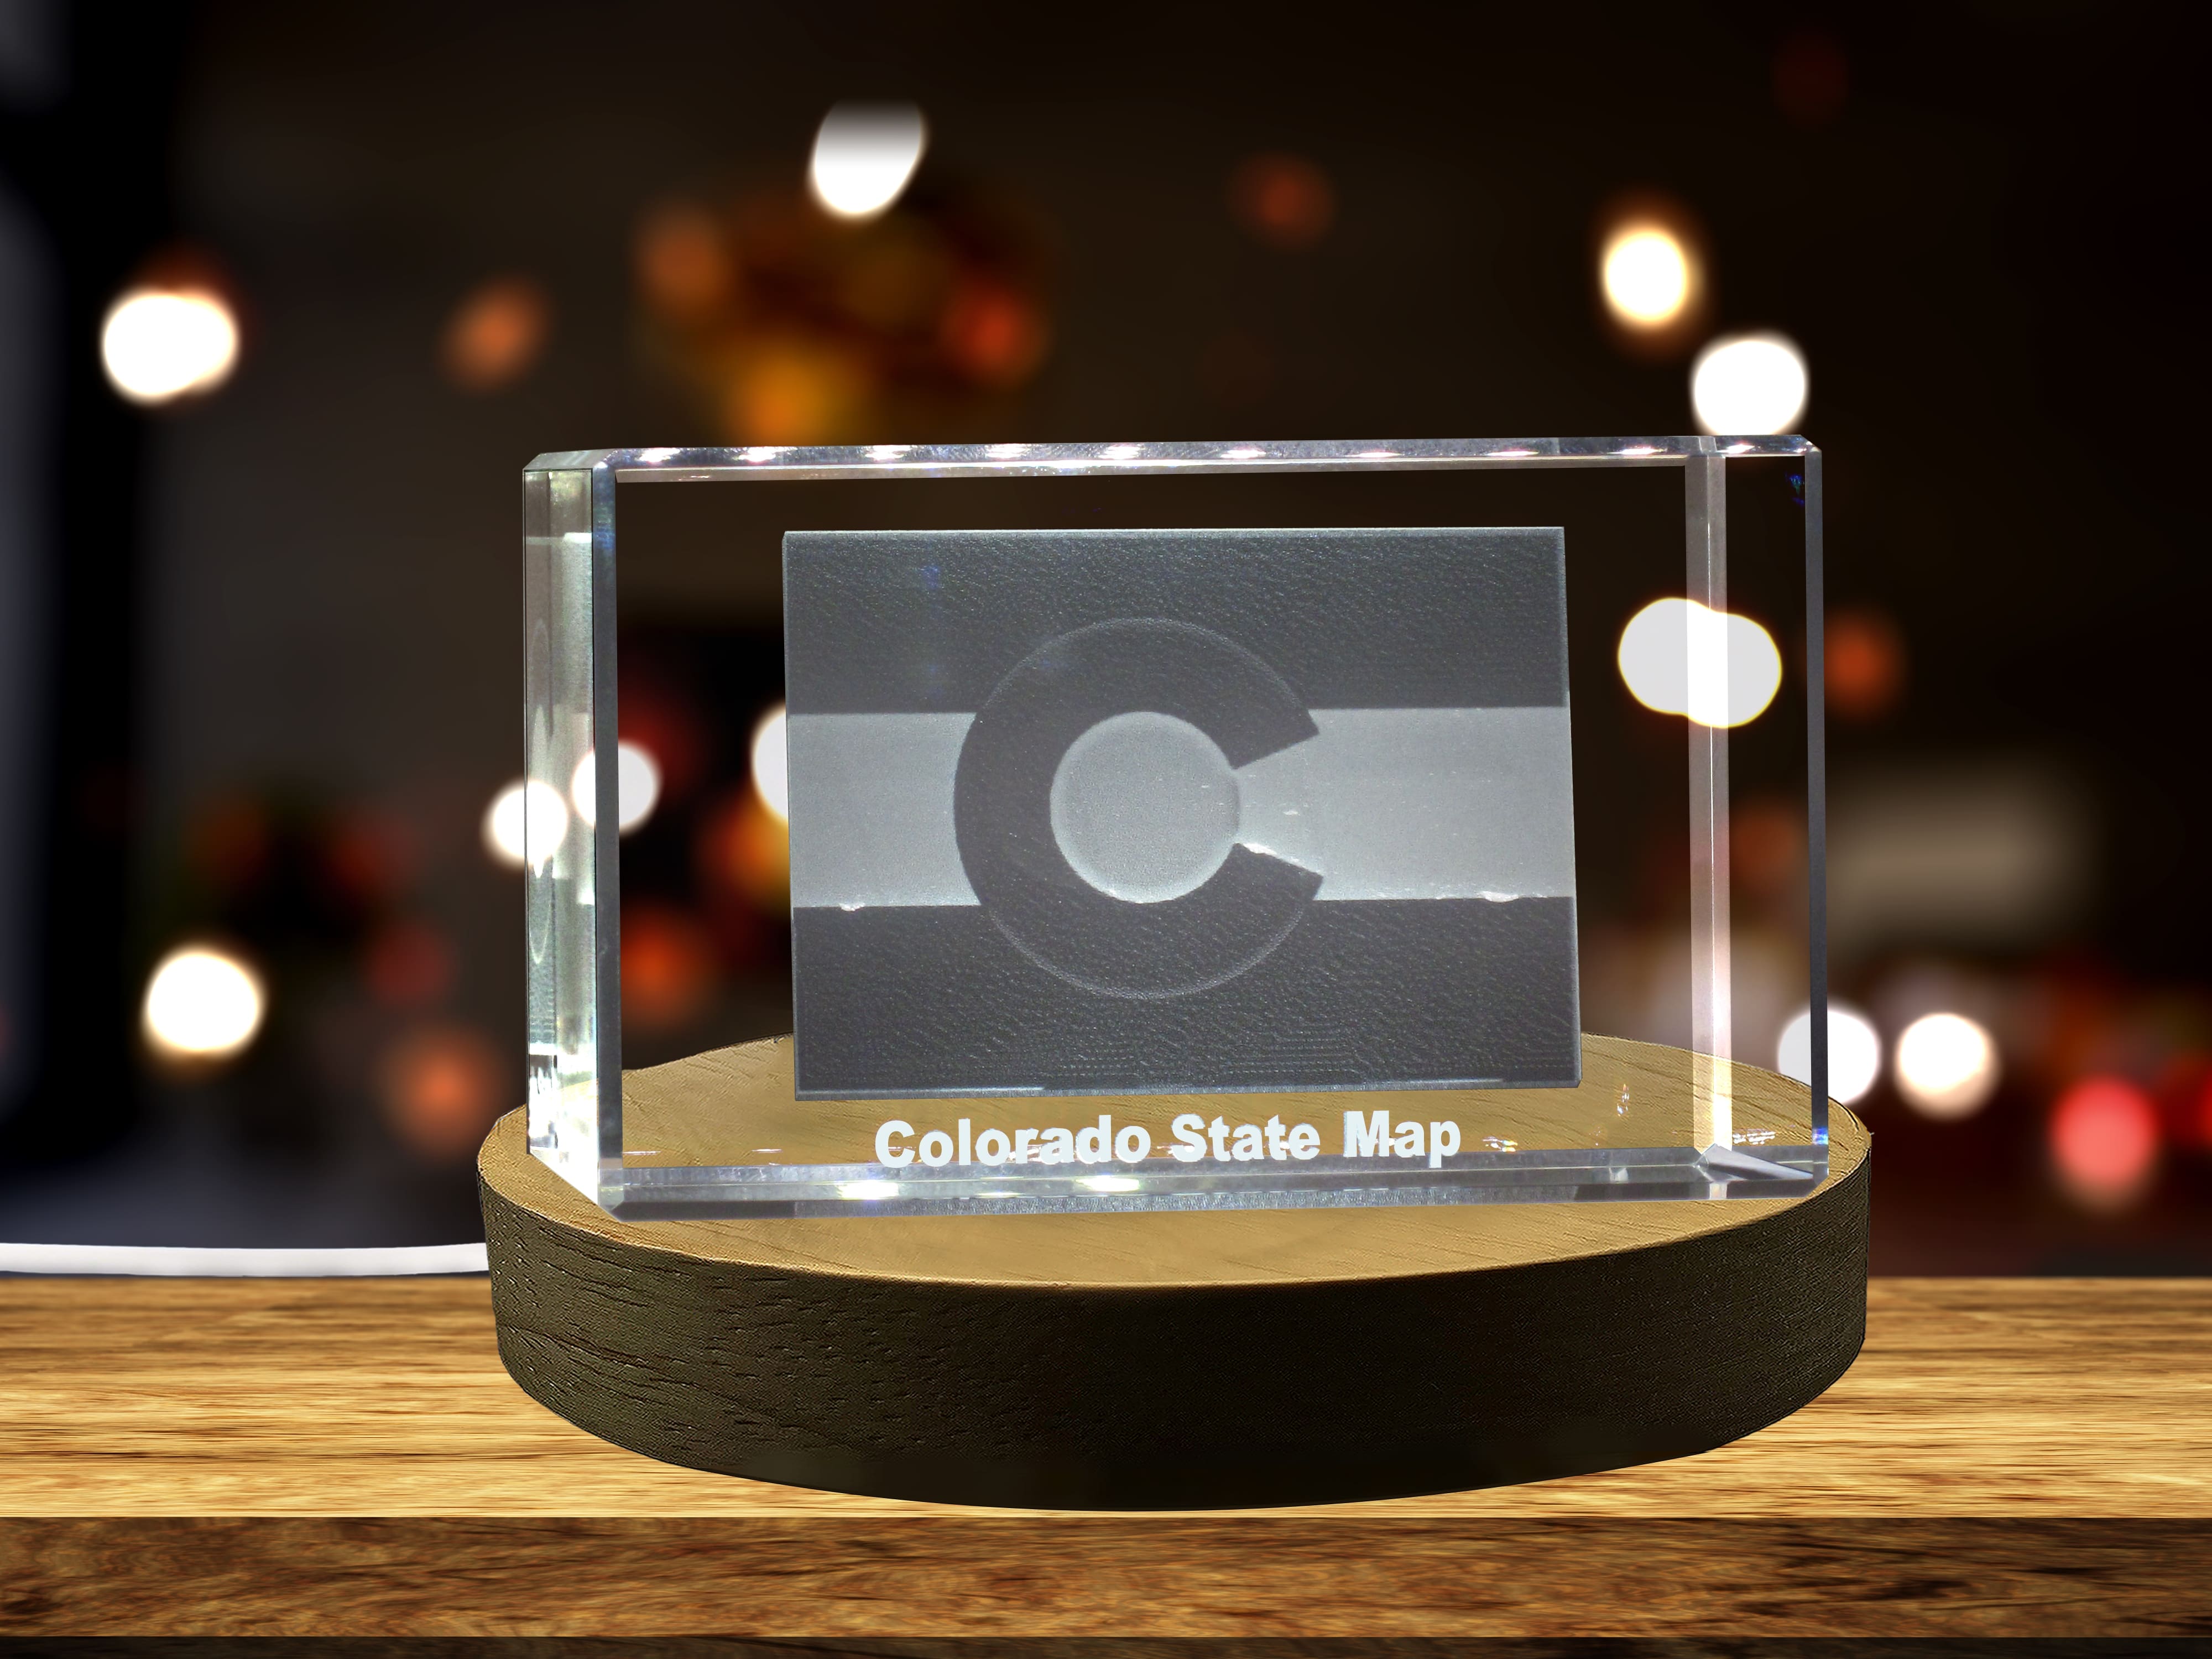 Colorado 3D Engraved Crystal 3D Engraved Crystal Keepsake/Gift/Decor/Collectible/Souvenir A&B Crystal Collection